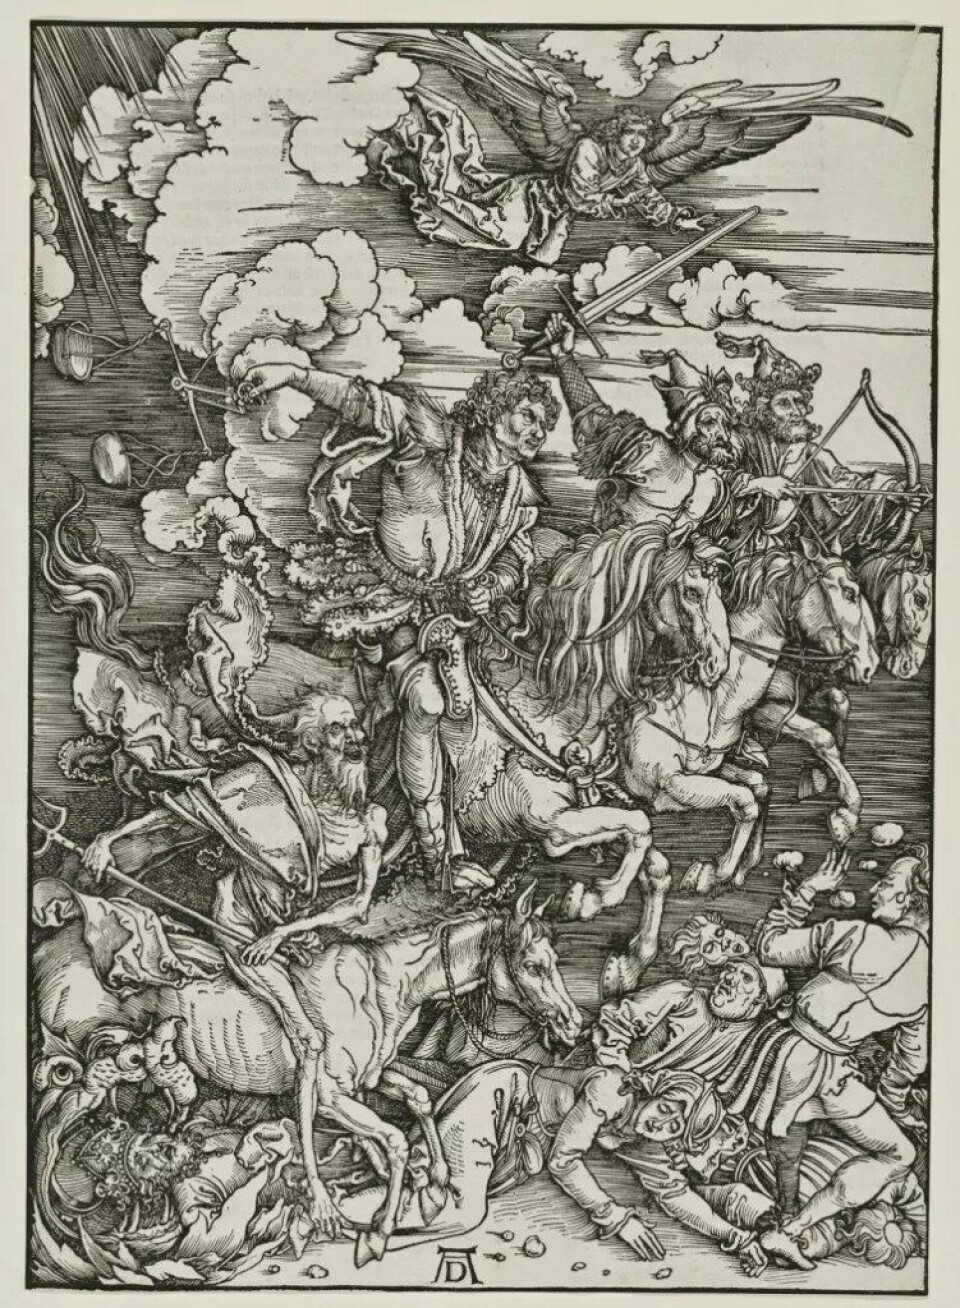 Tradisjonelt var apokalyptiske fortellinger tilknyttet religiøse forestillinger om dommedag. I moderne forestillinger om klimaendringer kan man fortsatt finne spor av slik narrativ struktur. (Utsnitt av Albrect Dürers «Apokalypsen», ca 1496-96. Kilde: Wikimedia commons, CC NA 1.0).